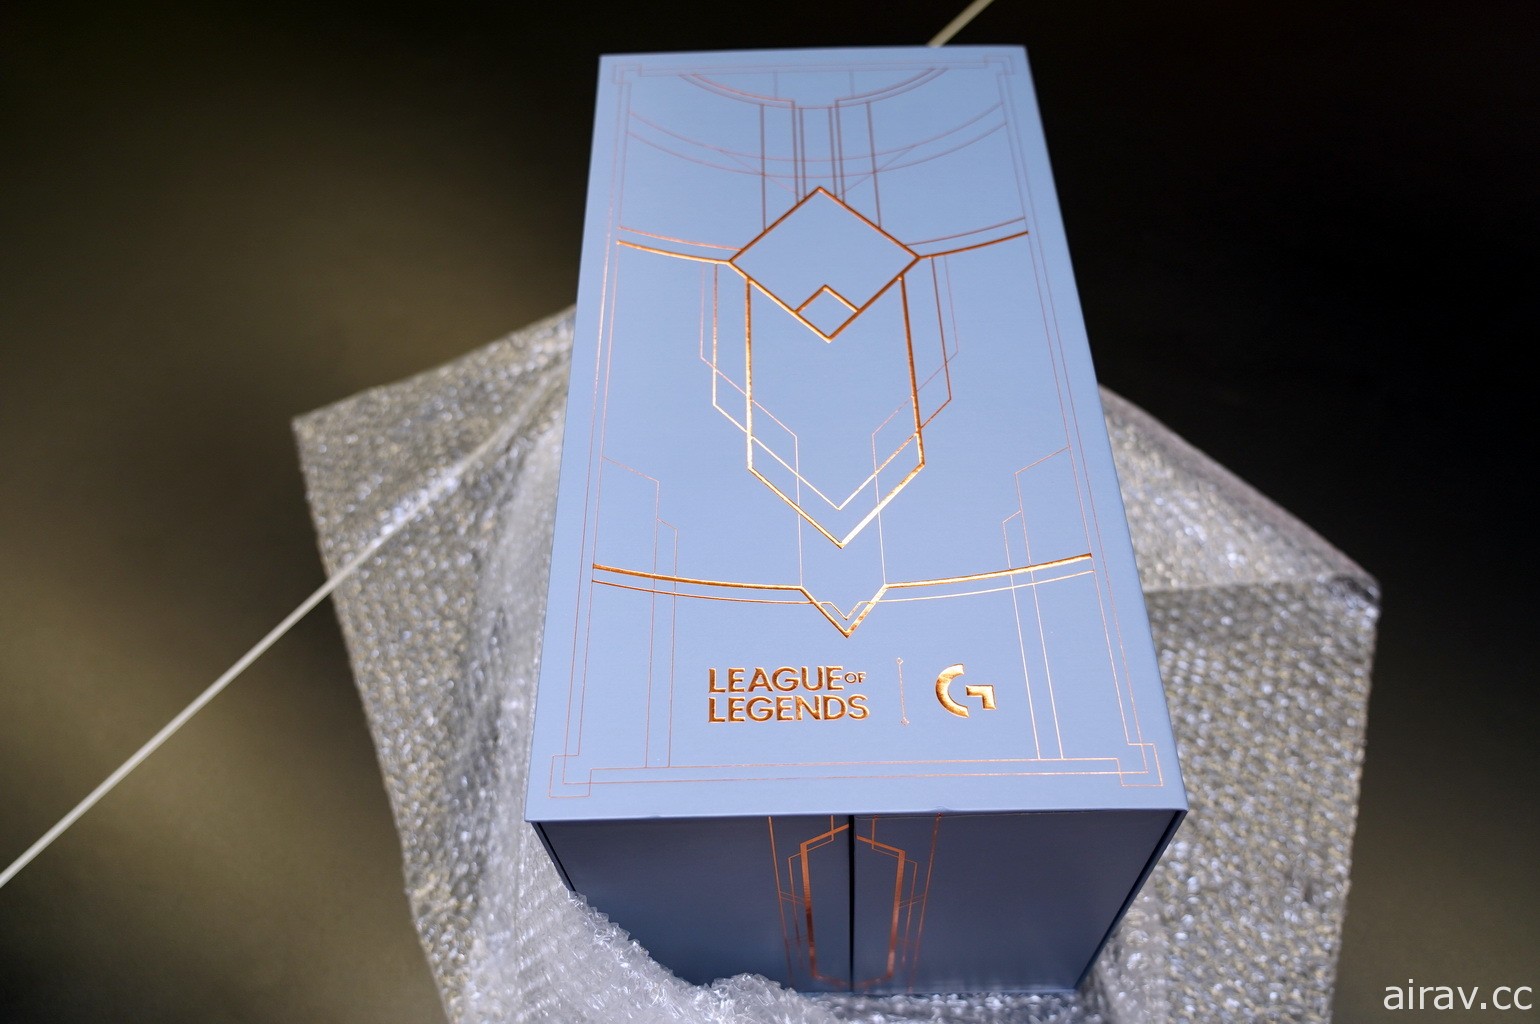 【开箱】以海克斯科技为发想设计“Logitech G X 英雄联盟梦幻套组”